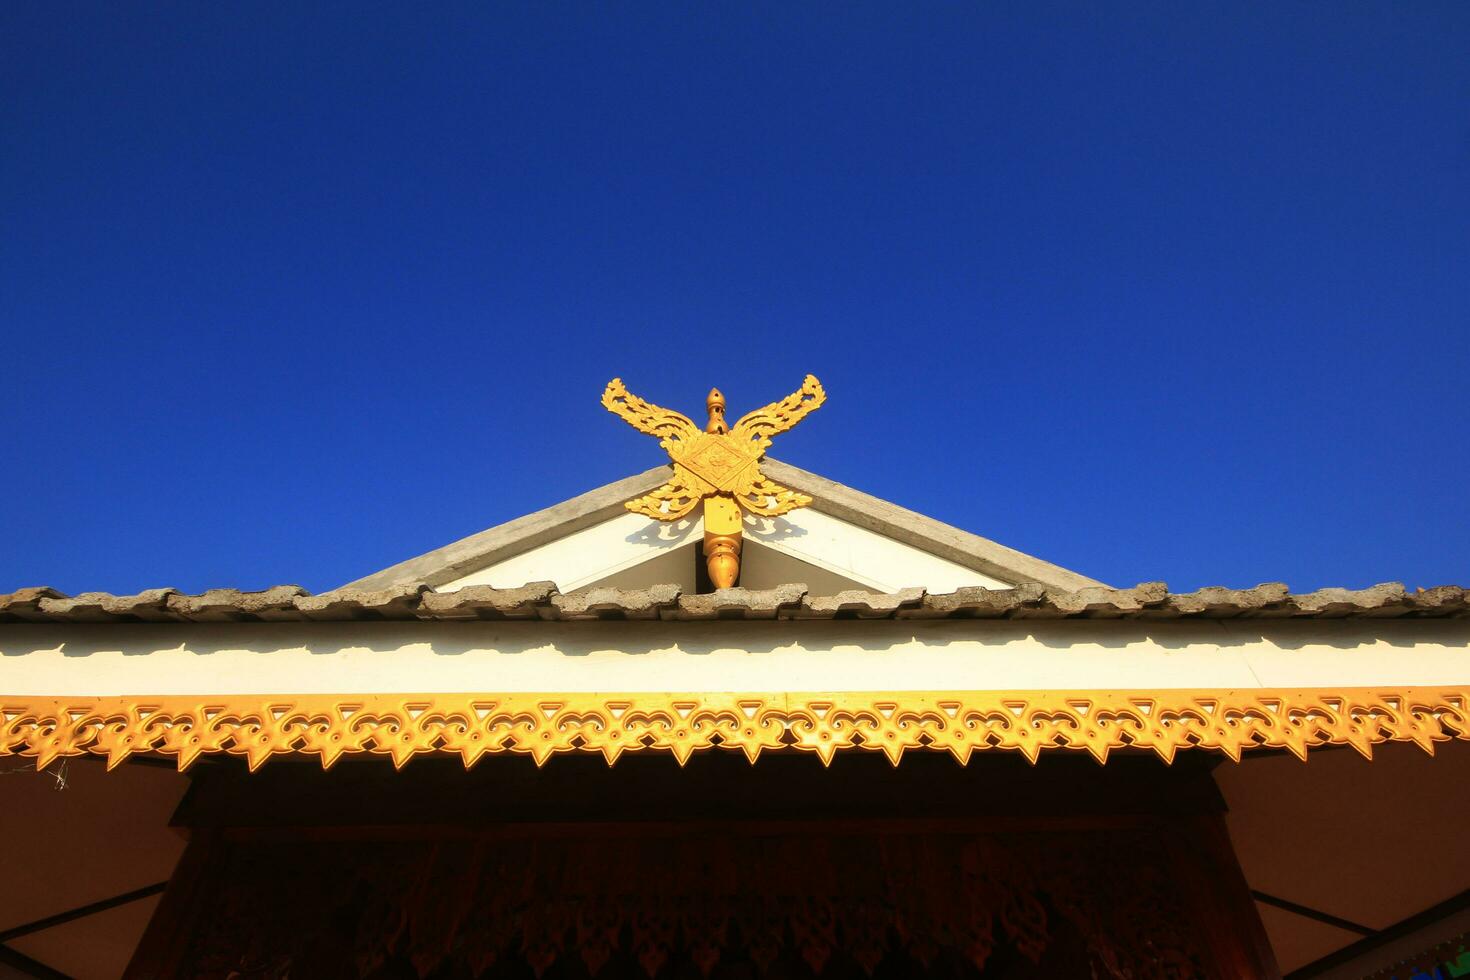 receptor antena é amarrado com de madeira escultura decorado em a cobertura do têmpora lanna estilo dentro norte do Tailândia foto